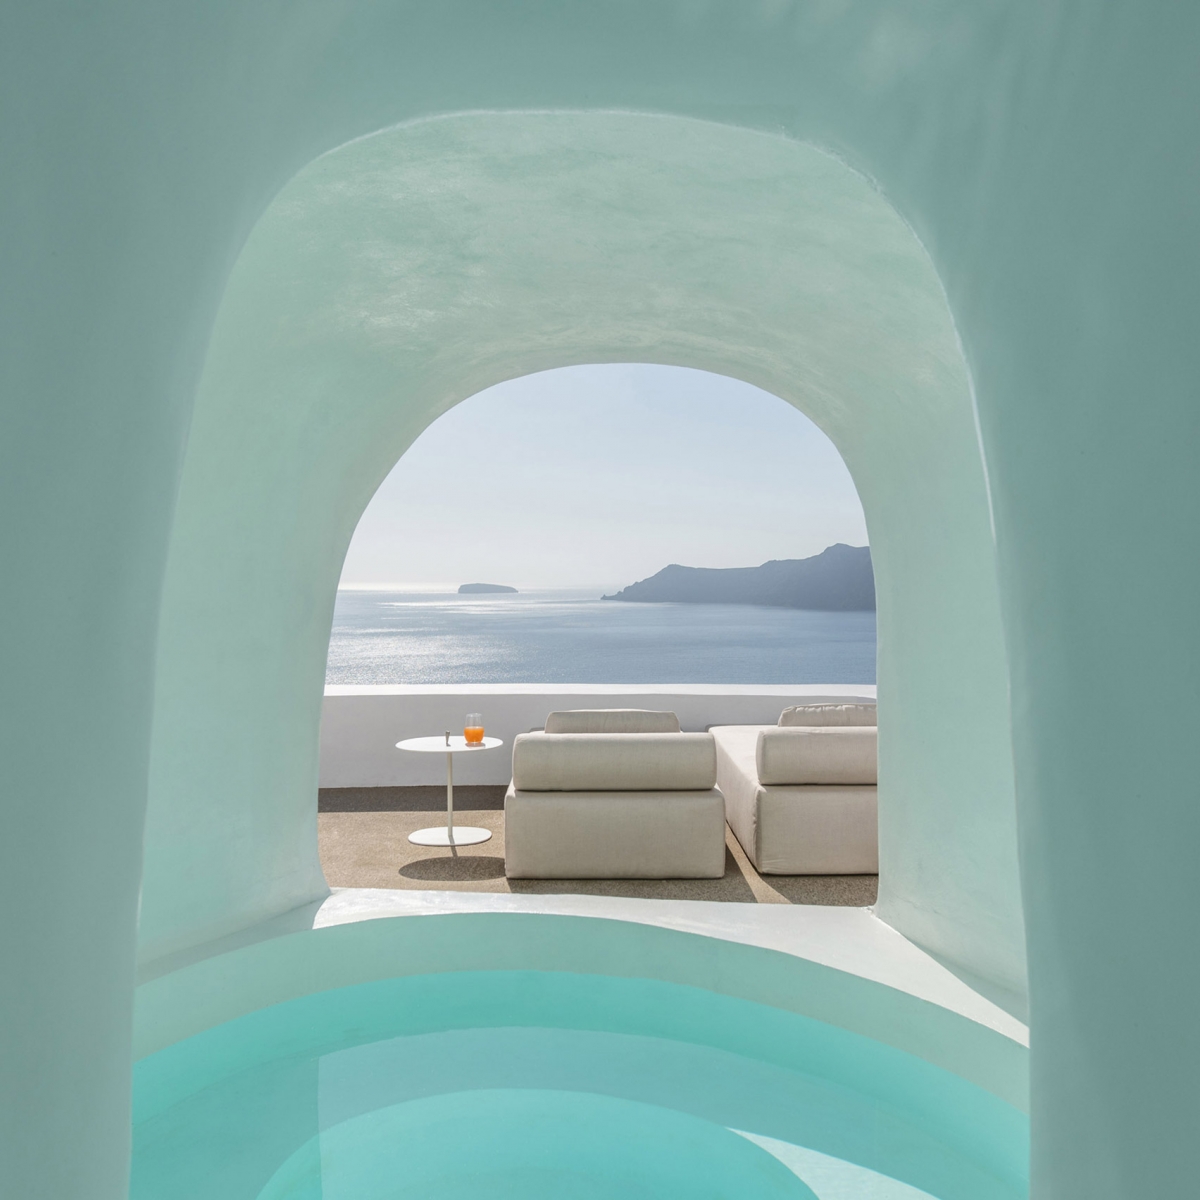 Khách sạn Saint ở Hy Lạp bởi kiến trúc sư Kapsimalis. Ông đã đào một ngọn núi đá ở Santorini để xây dựng một khách sạn độc đáo với tầm nhìn ra biển. 